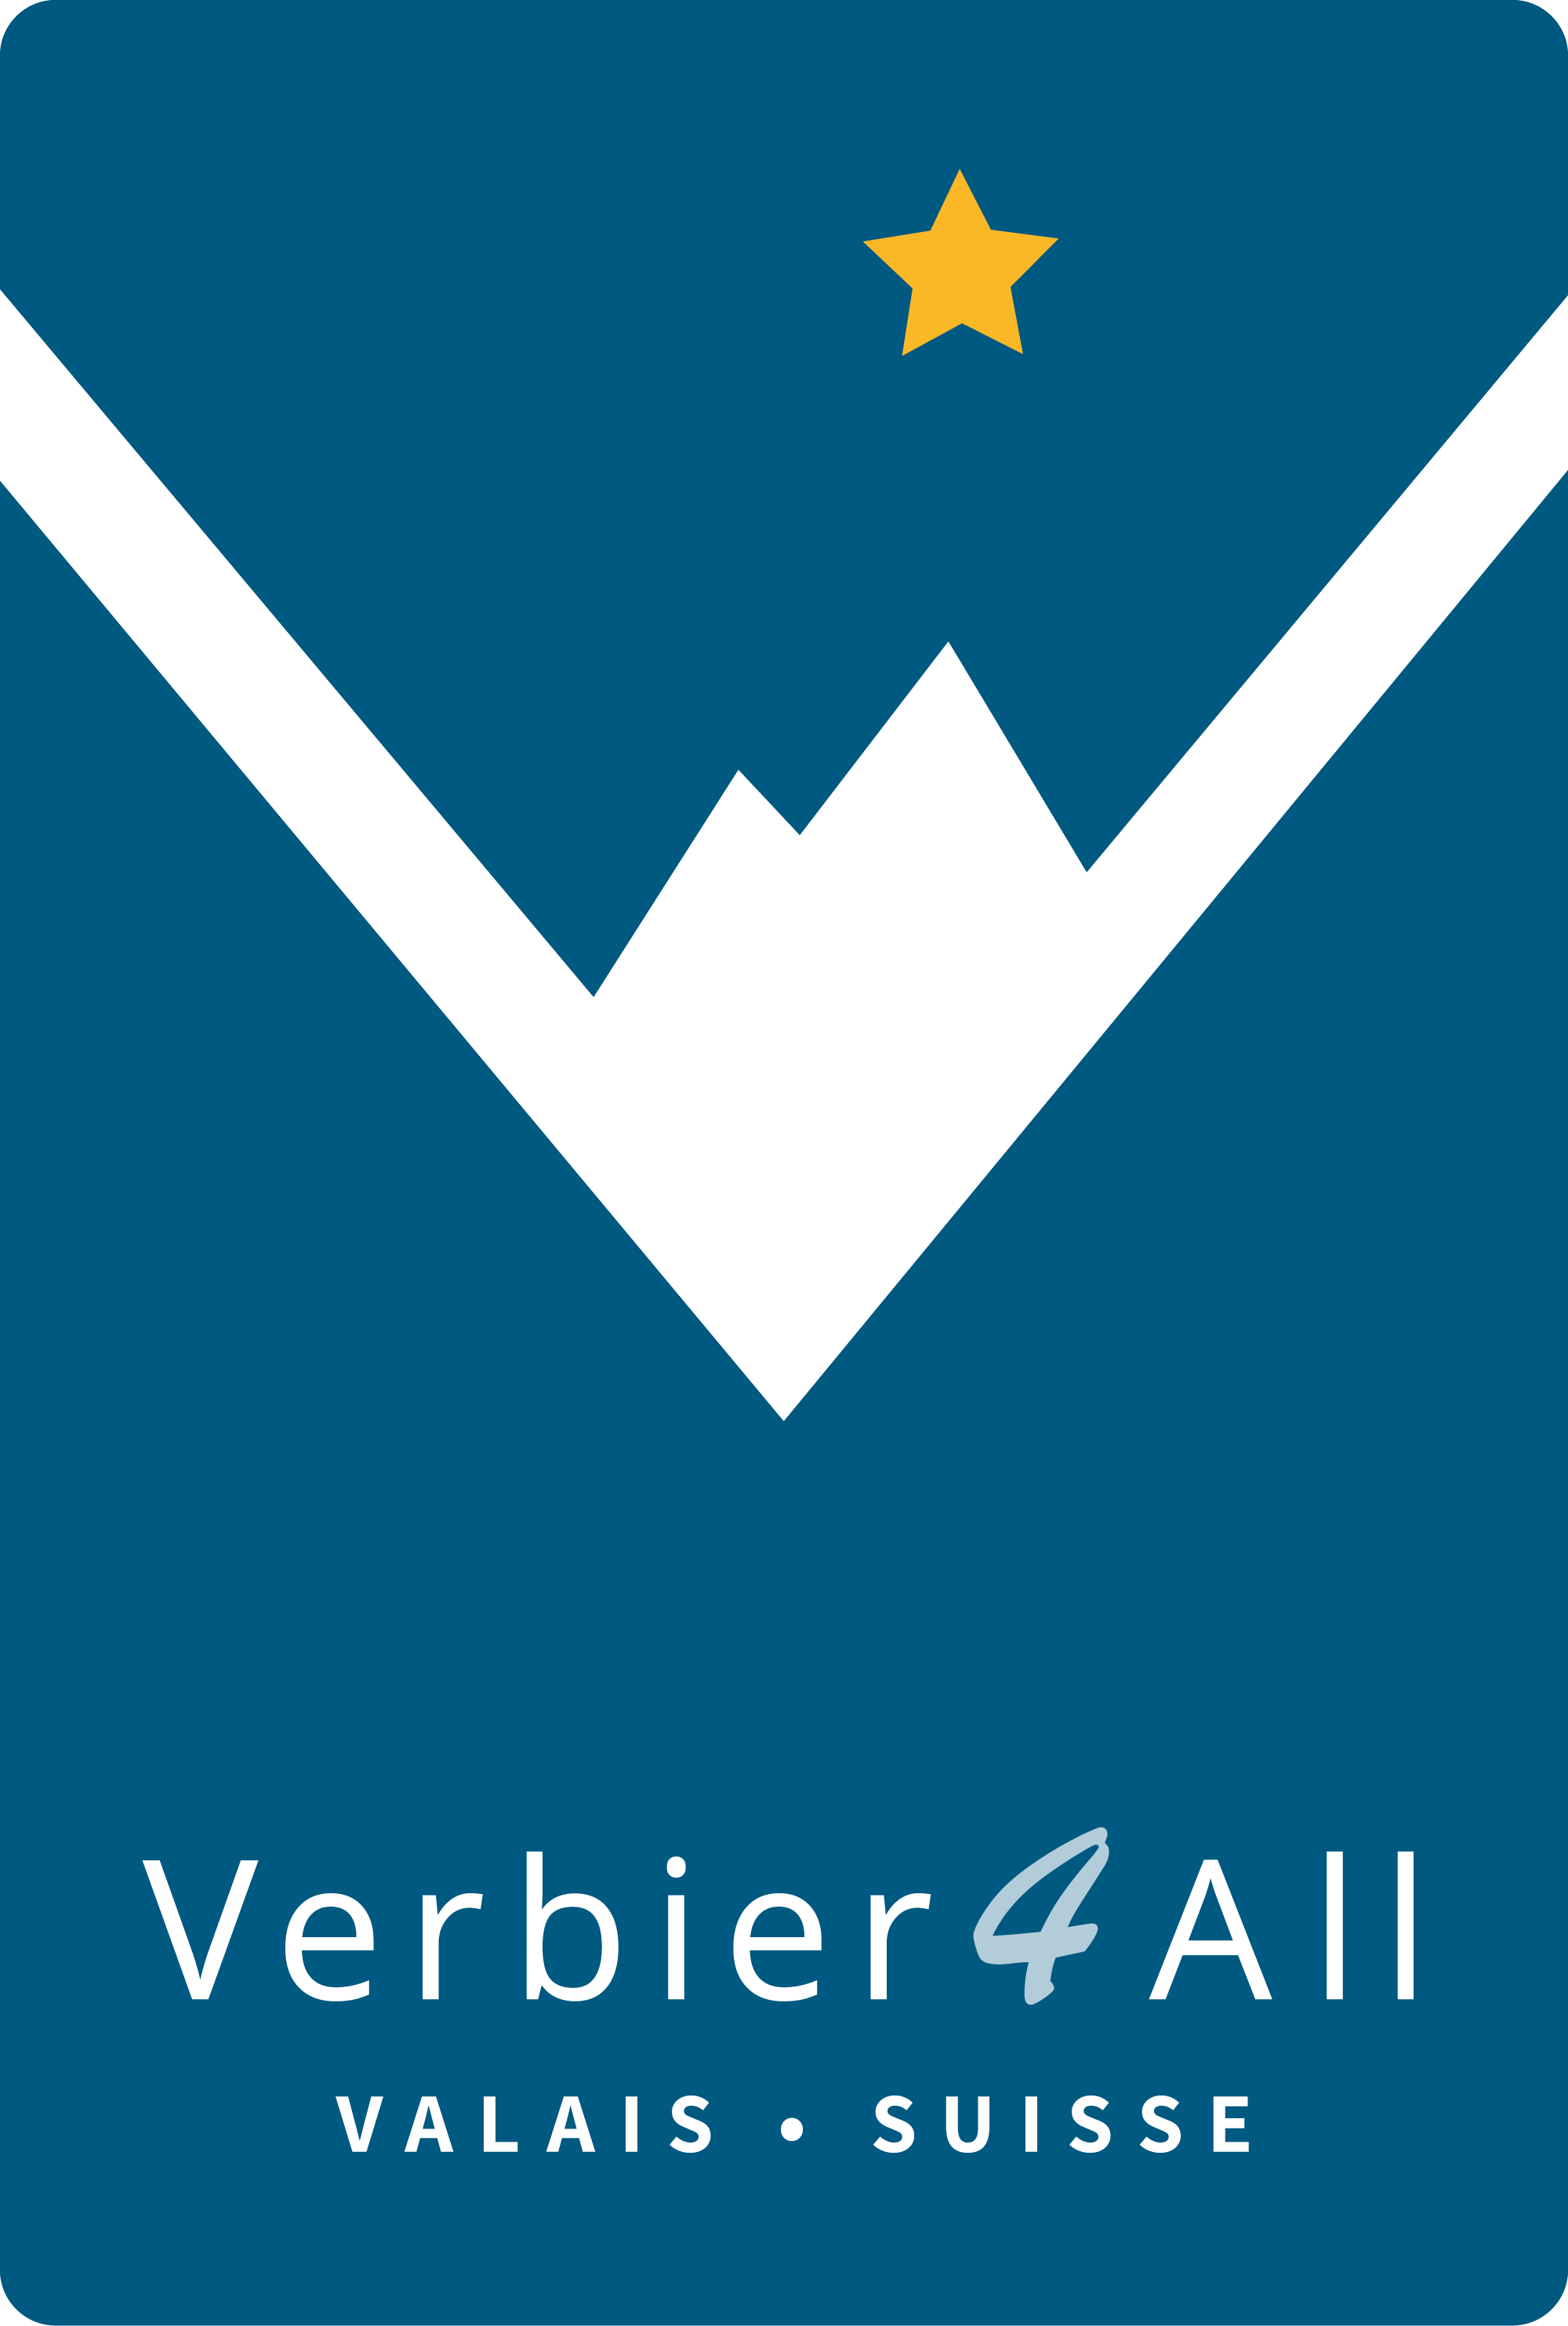 Verbier4All